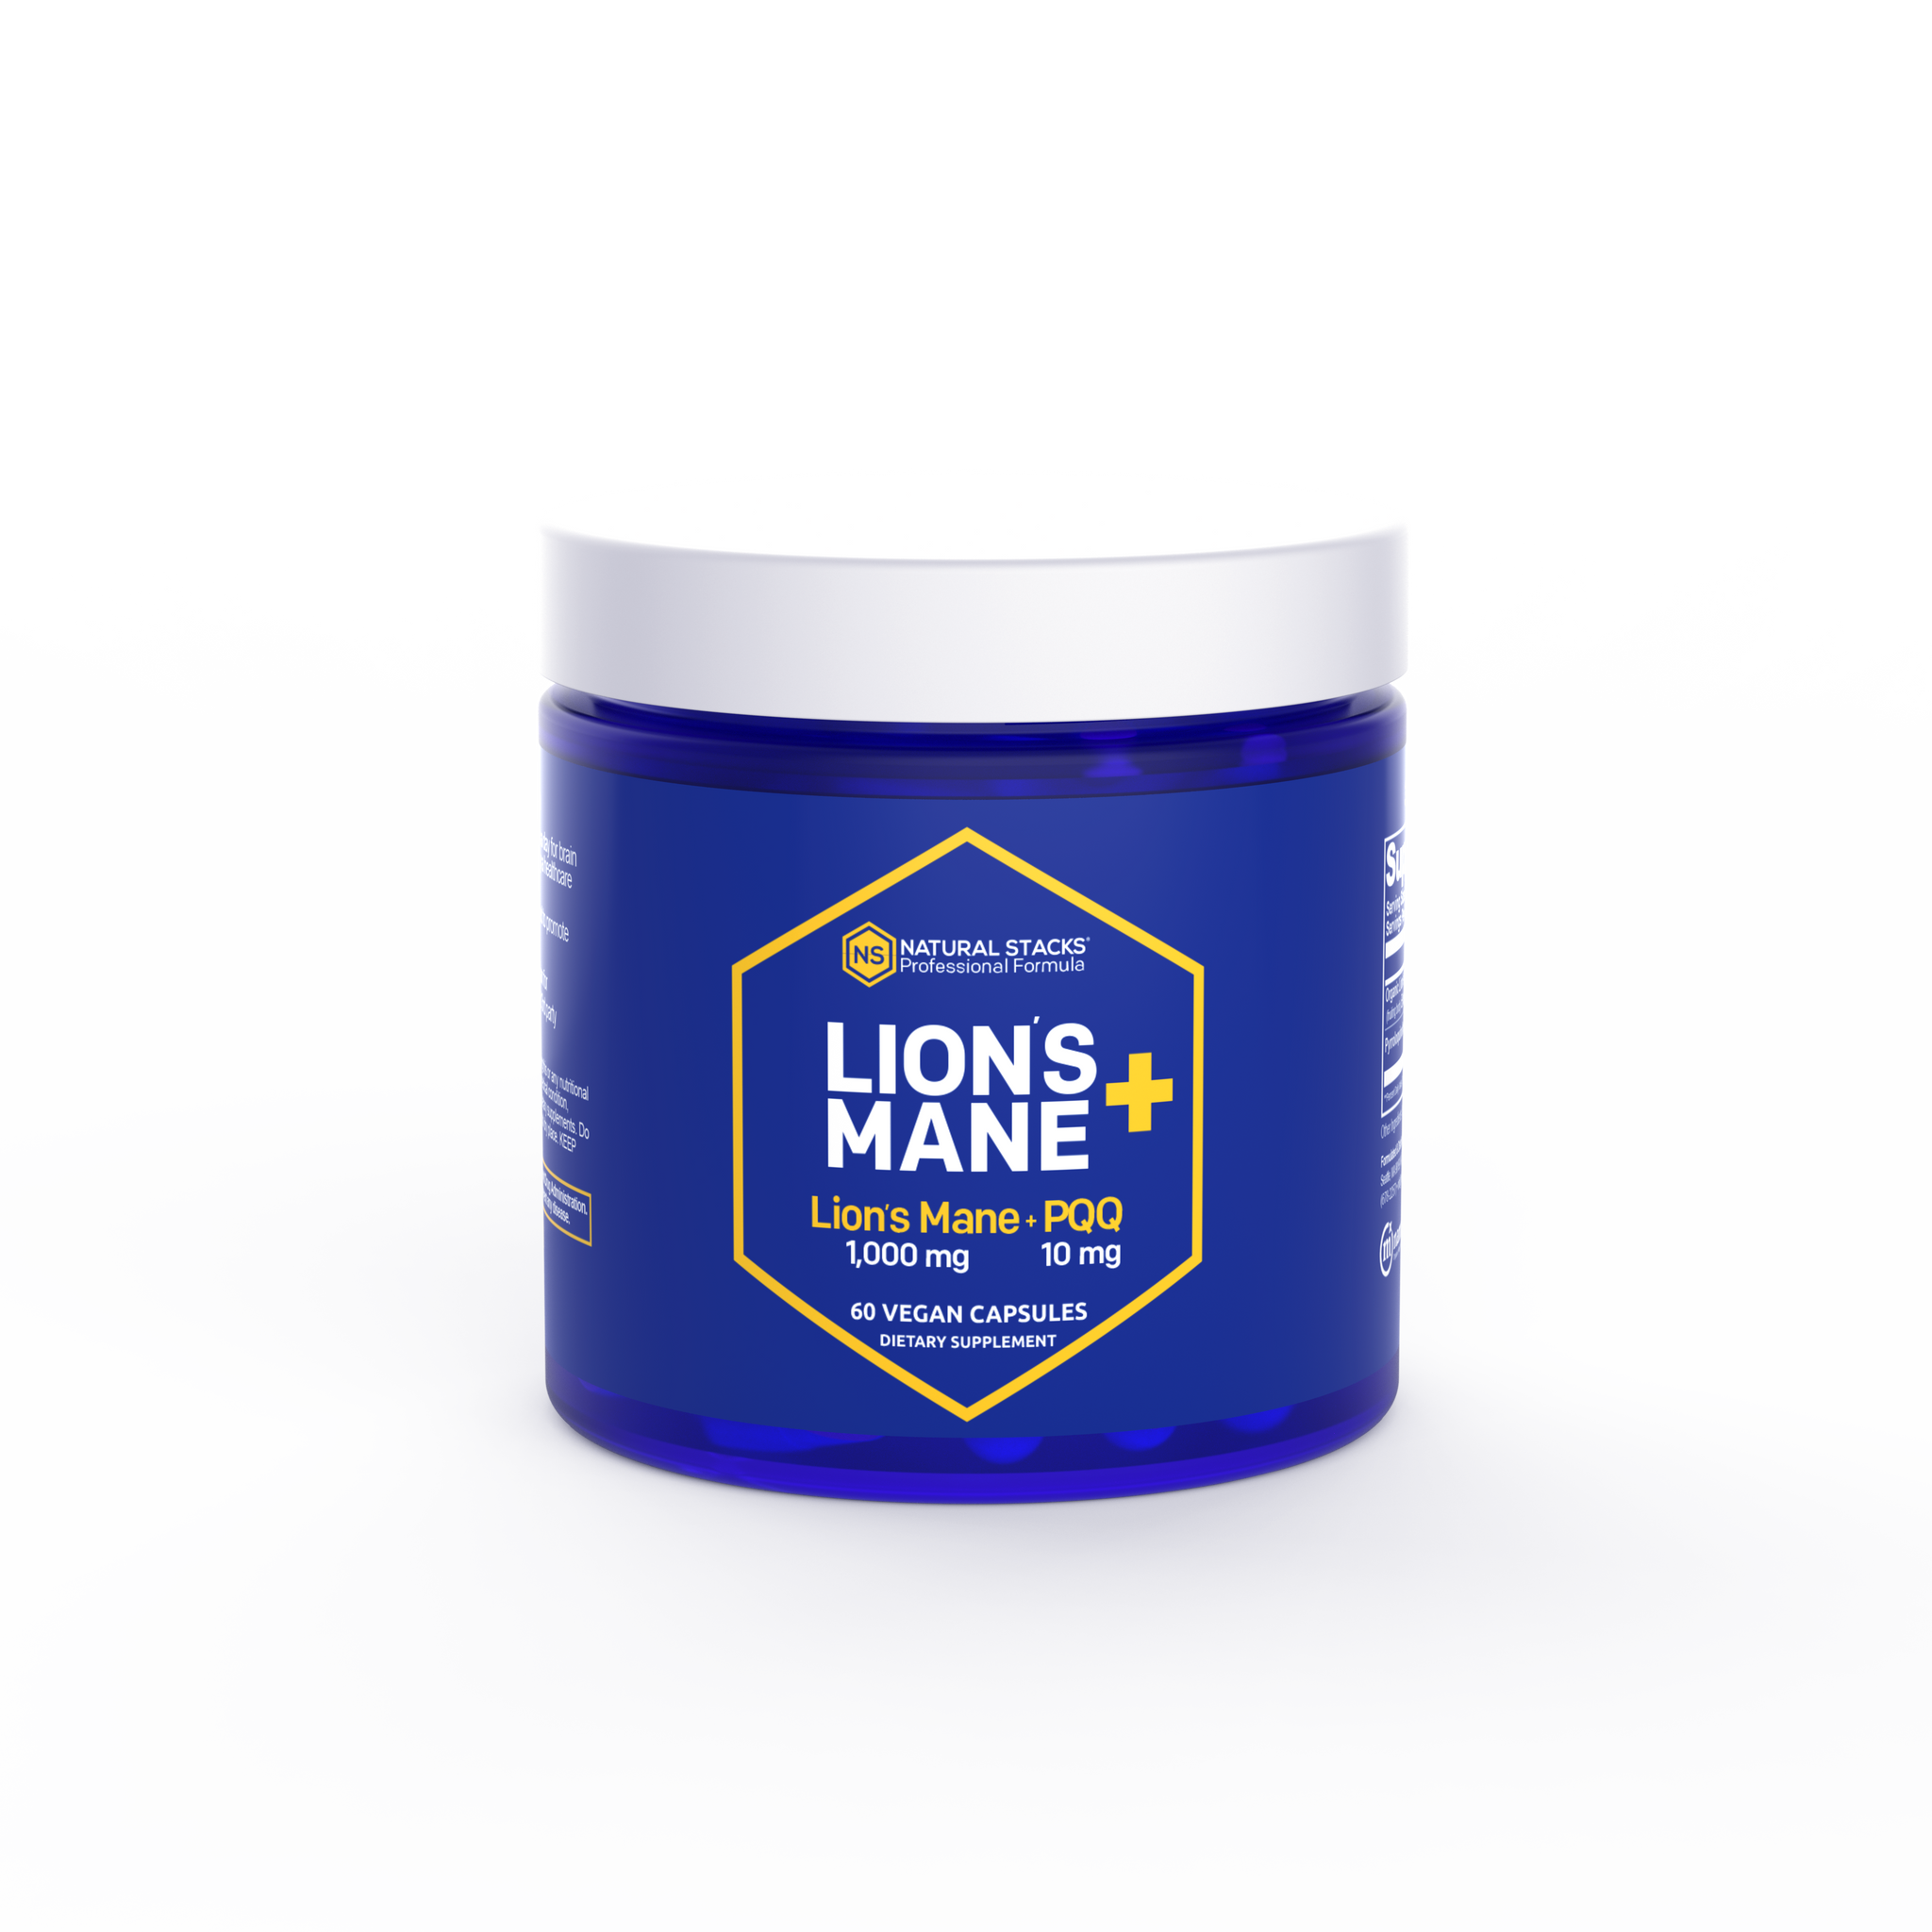 Lion's mane bottle front